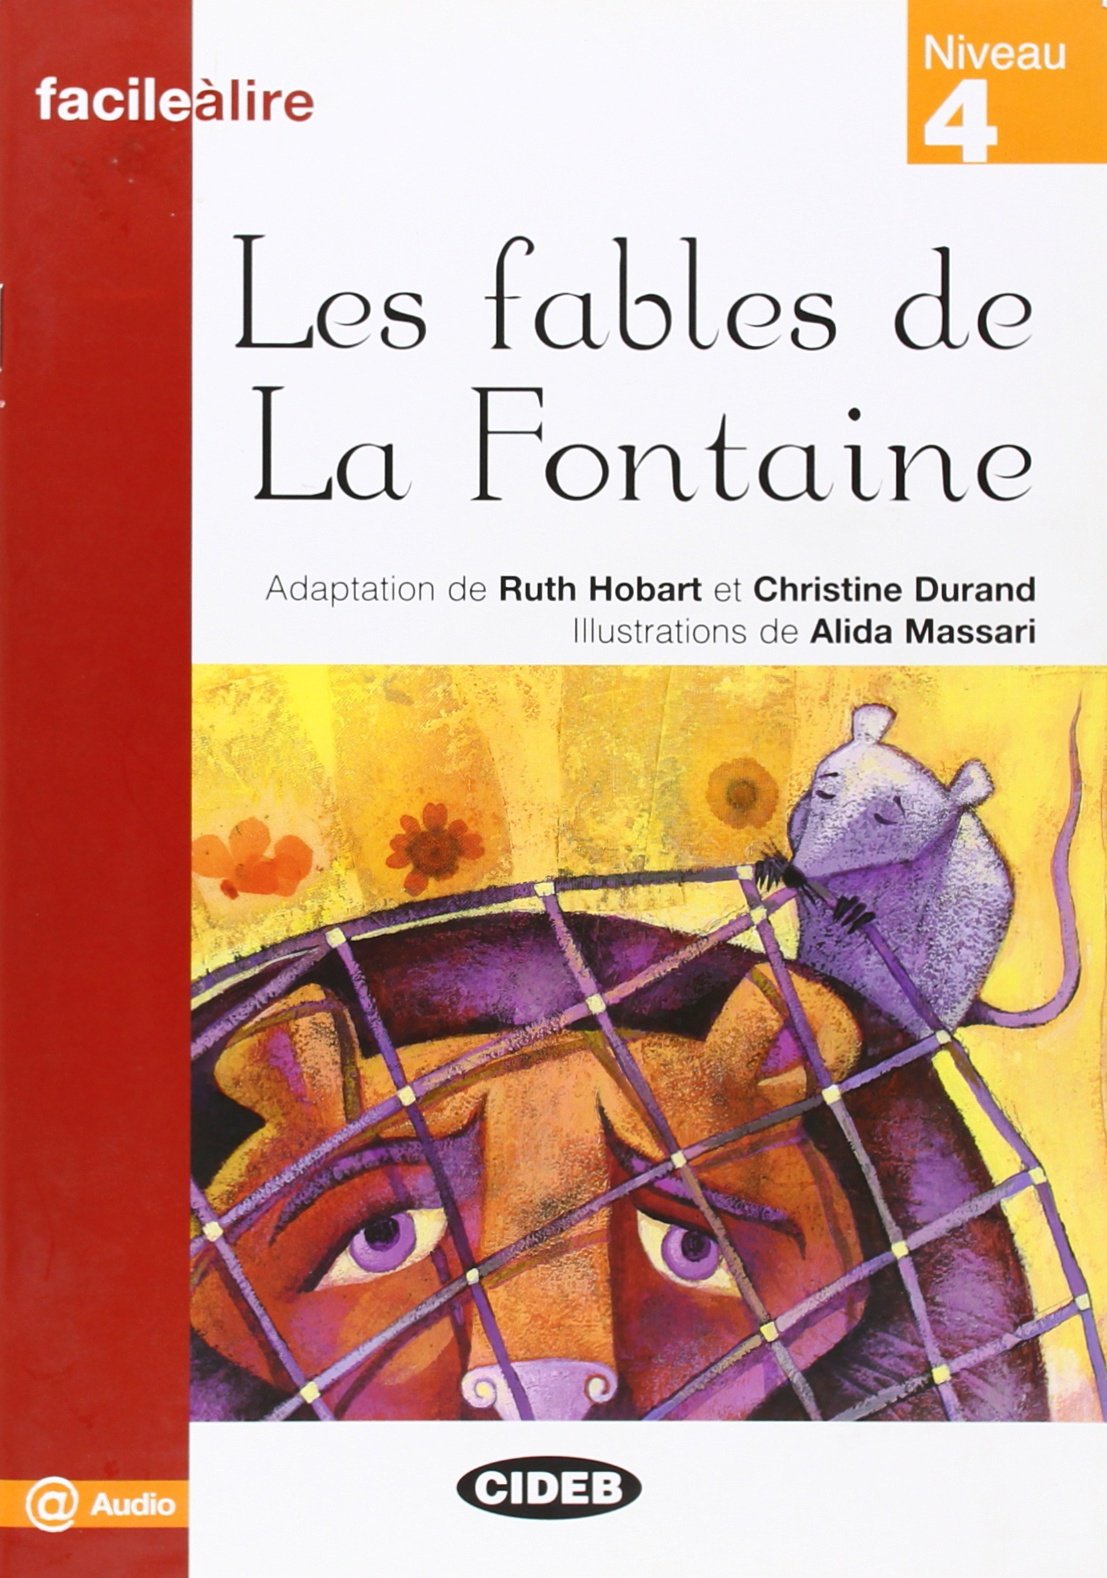 Fr FaL 4 Les fables de La Fontaine